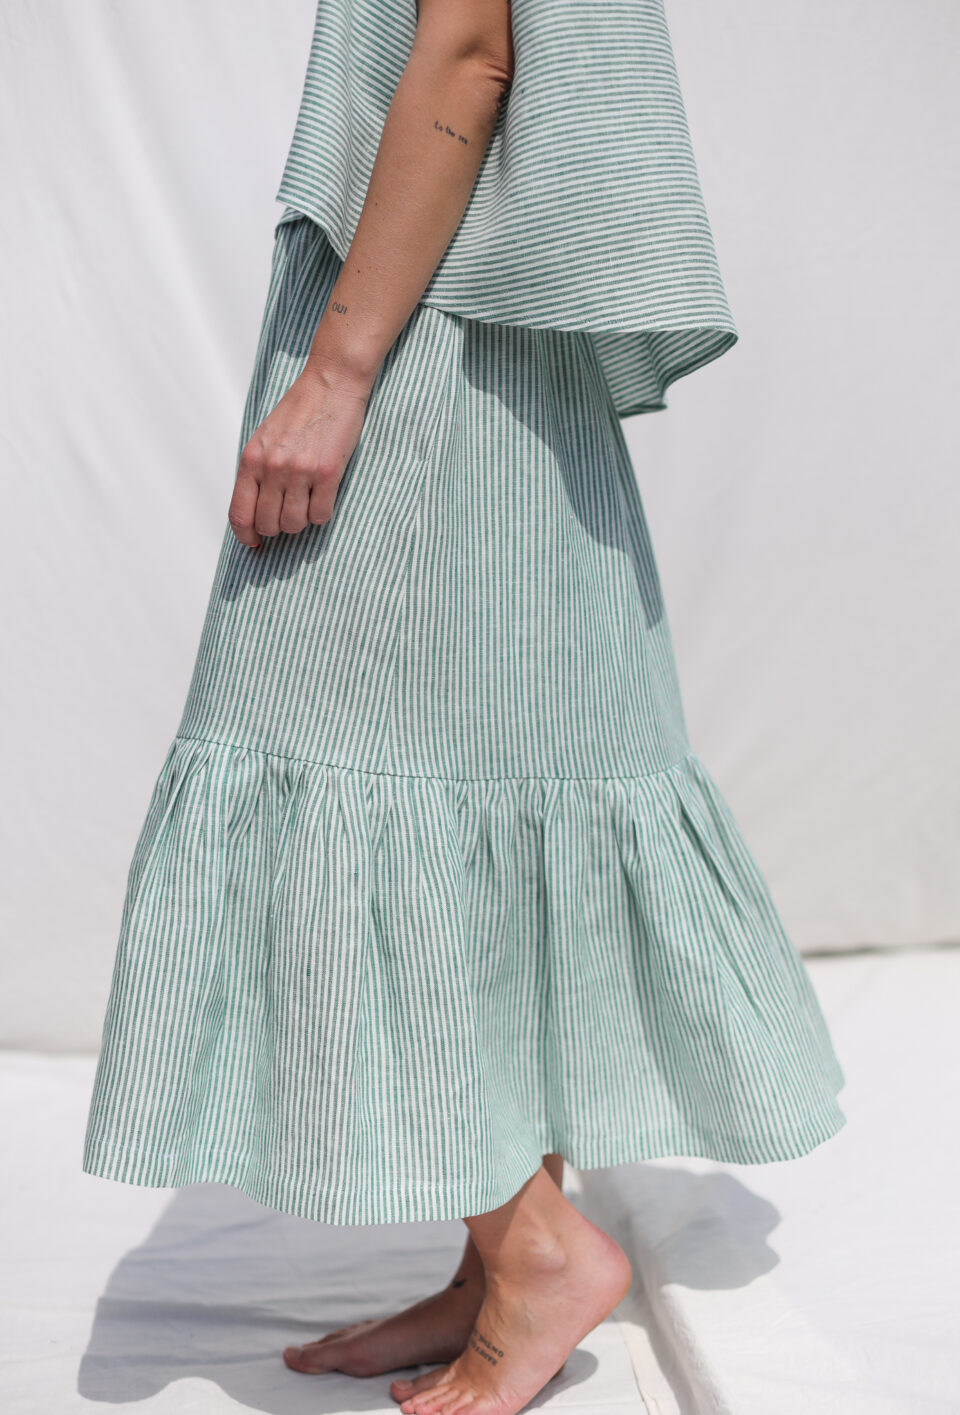 Linen ruffled hem skirt in green stripes | Skirt | Sustainable clothing | OffOn clothing